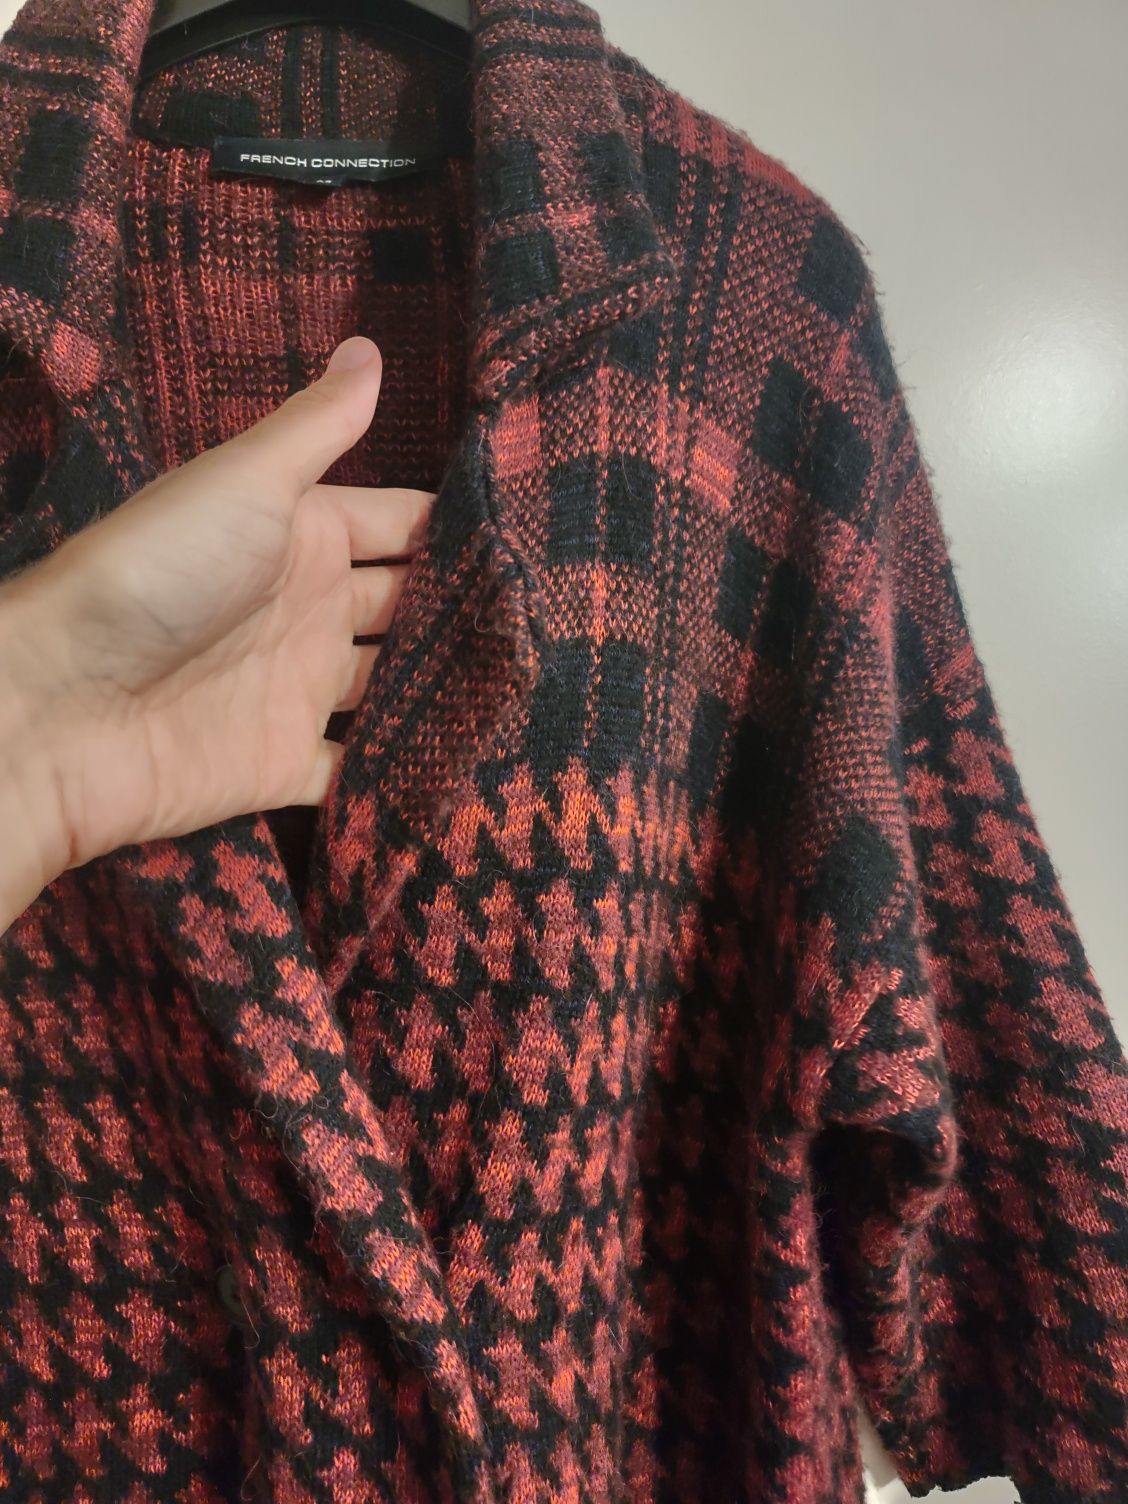 Sweter, narzutka w kratkę czerwono-czarną, rozmiar S/M